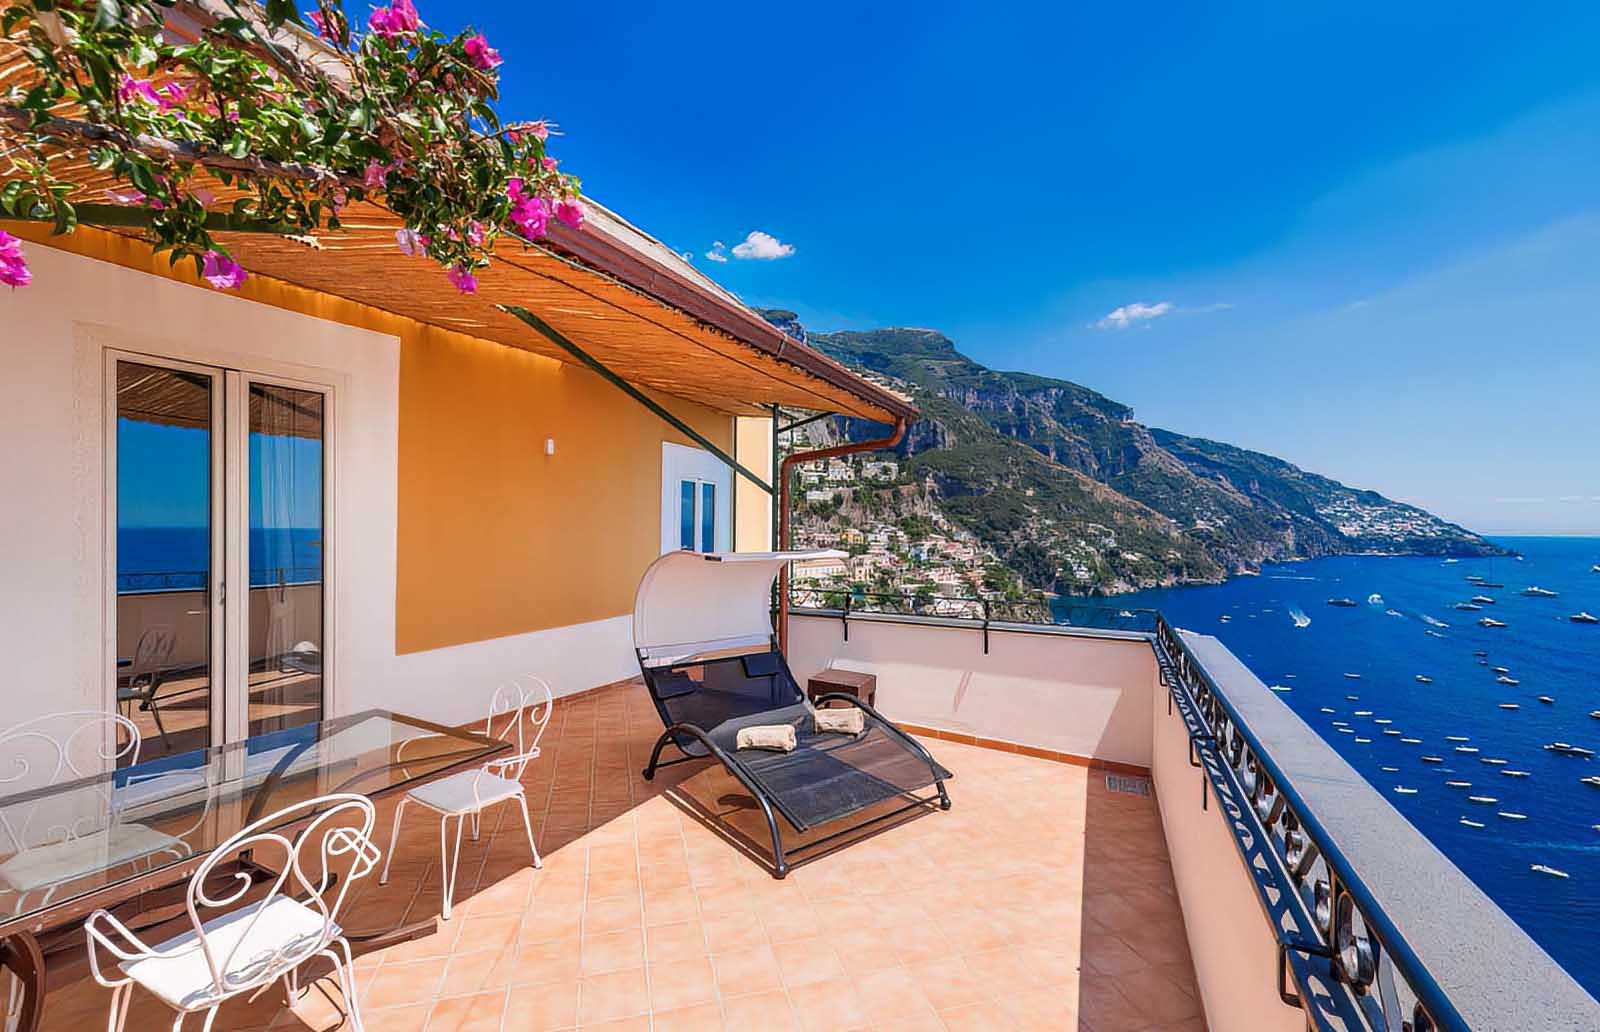 Best Hotels in Positano Villa Magia Amalfi Coast